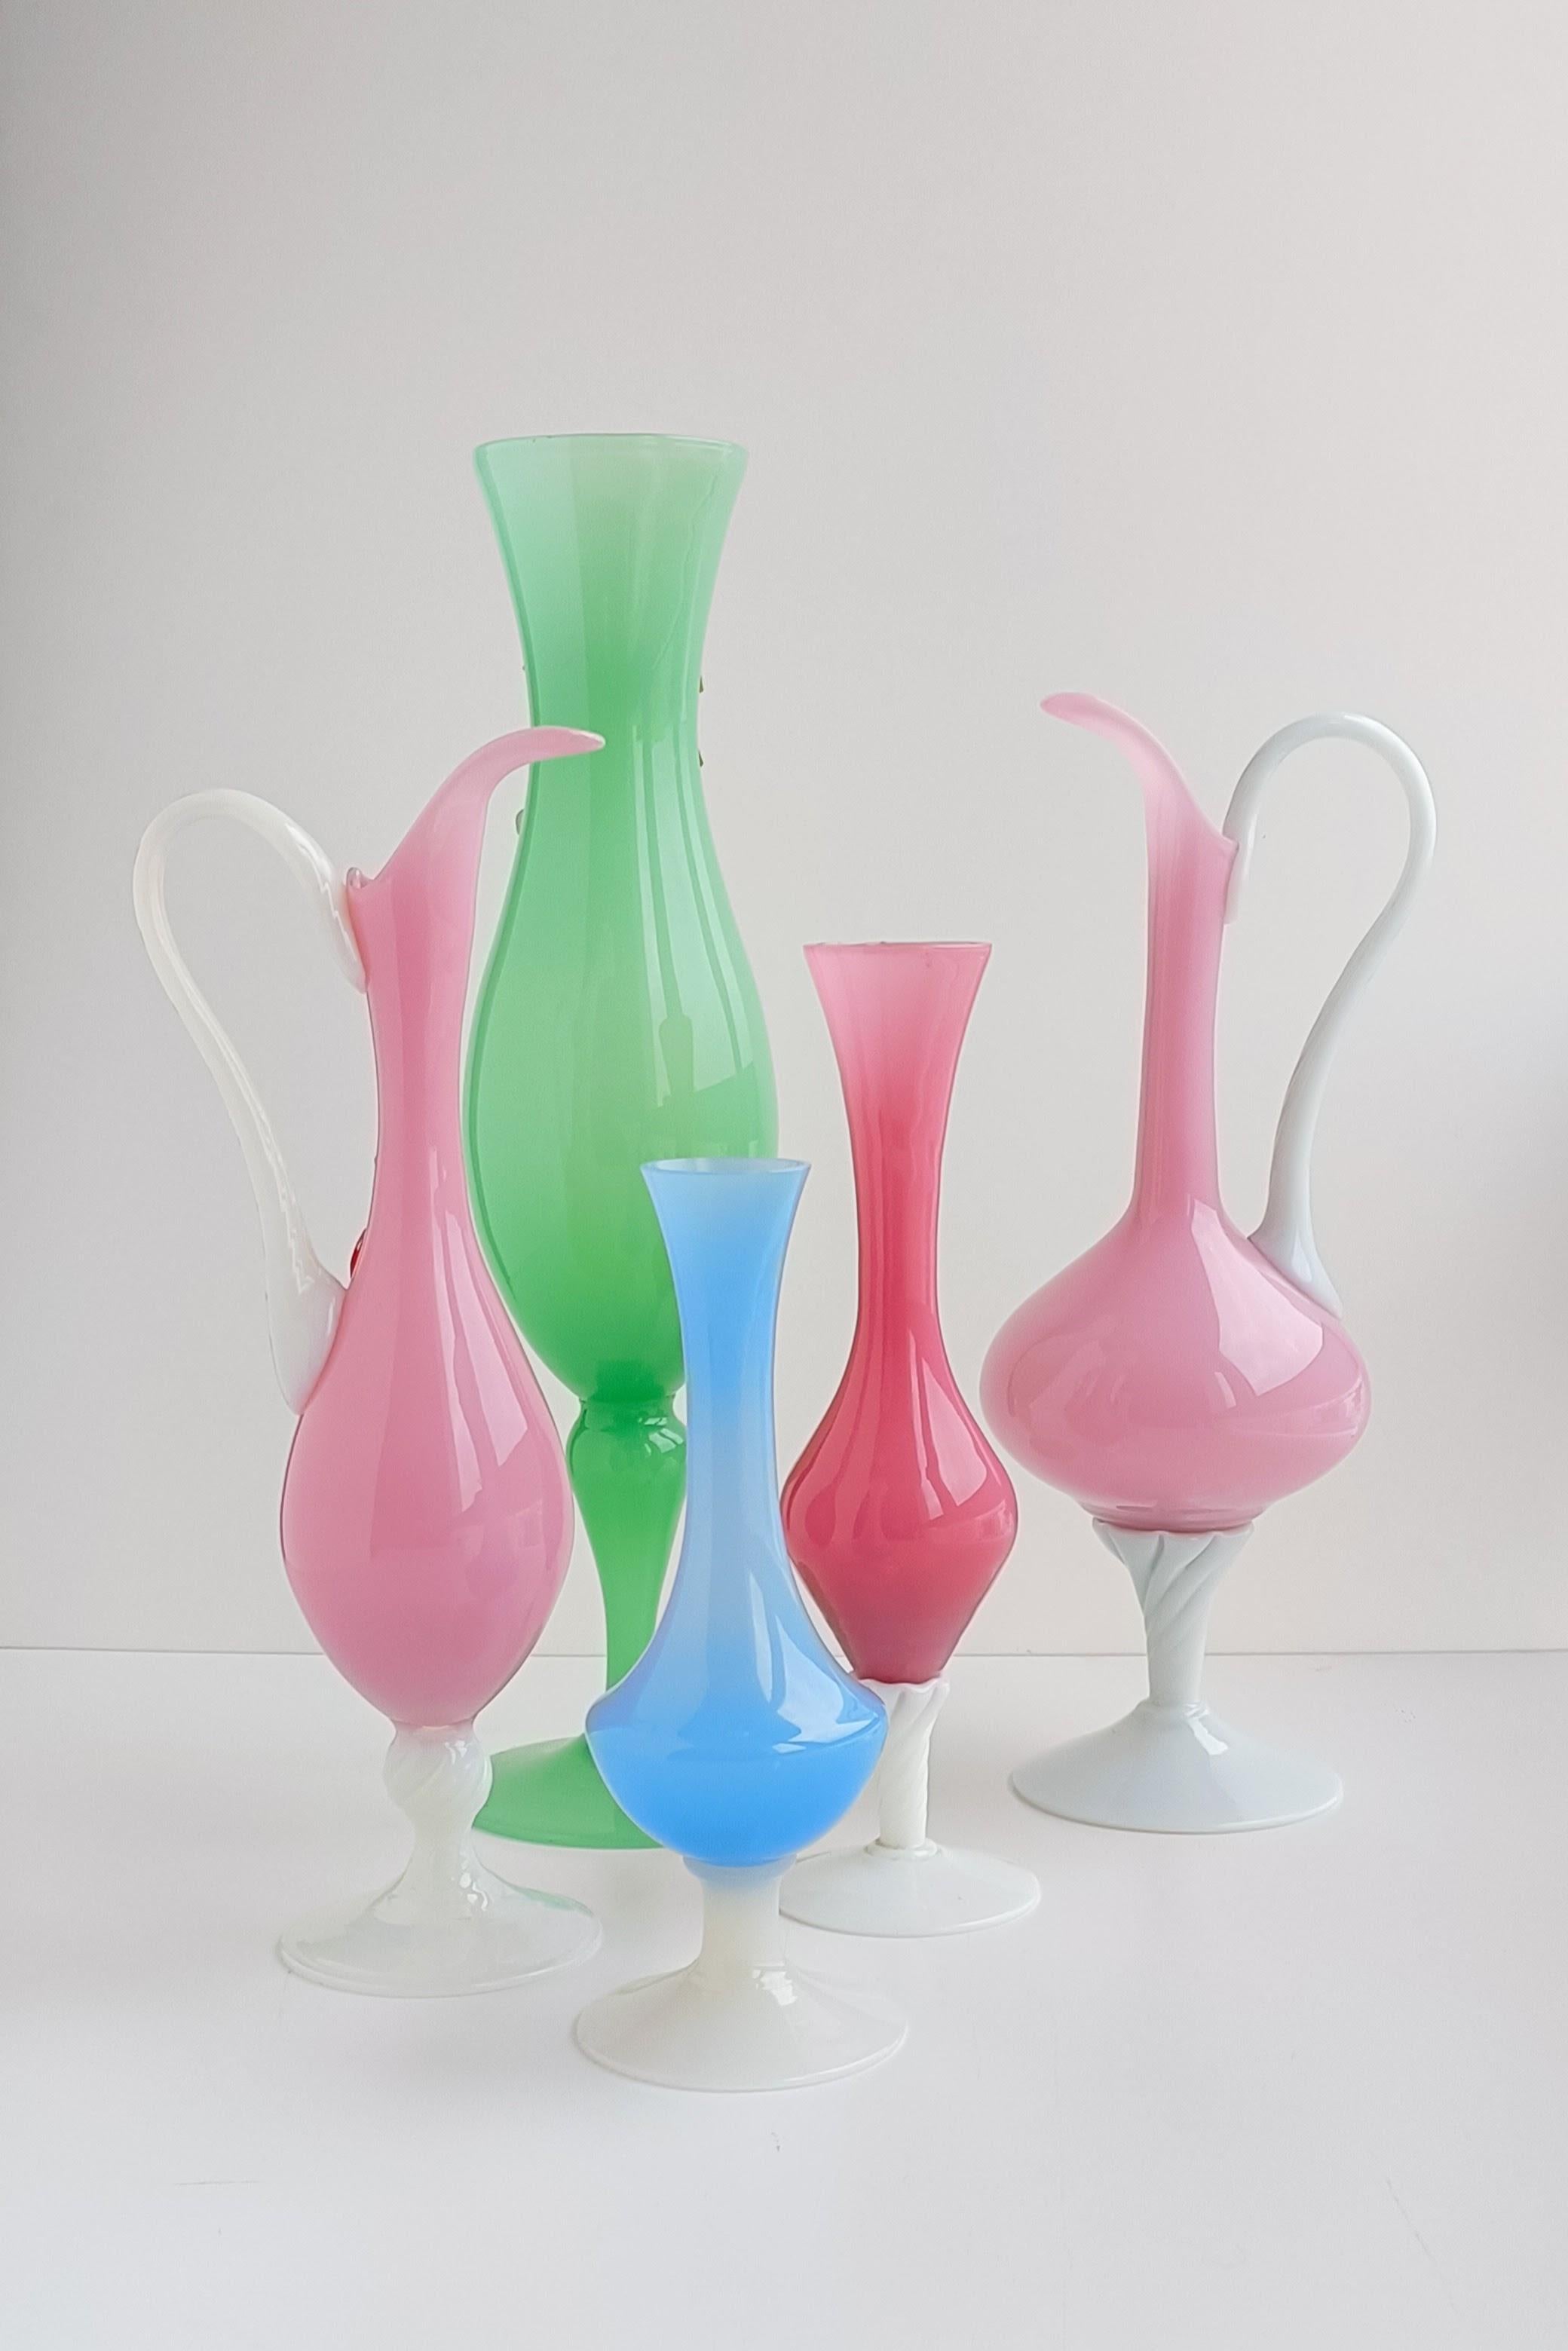 Diese Vasen aus Empoli Glass Opaline Florence, die in den 1950er Jahren in Italien handgefertigt wurden, sind ein schönes Beispiel für italienische Glaswaren im Vintage-Stil. Empoli in der Toskana hat eine lange Tradition in der Glasherstellung, und